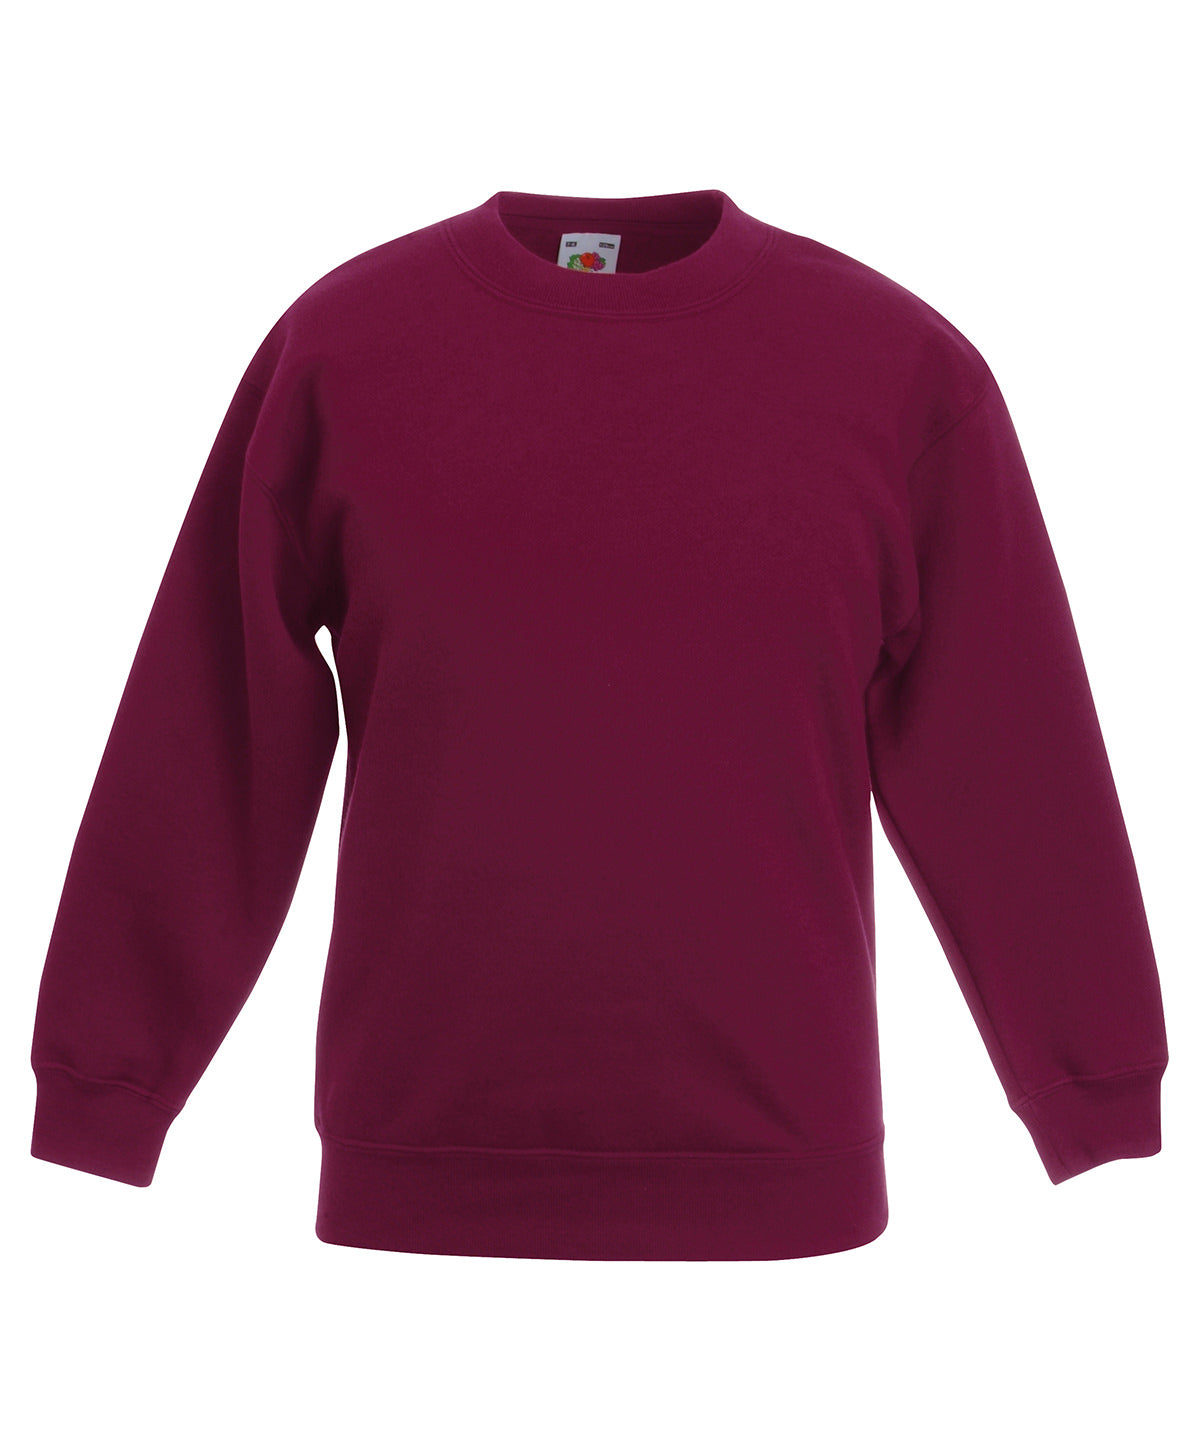 Personalised Sweatshirts - Black Fruit of the Loom Kids classic set-in sweatshirt